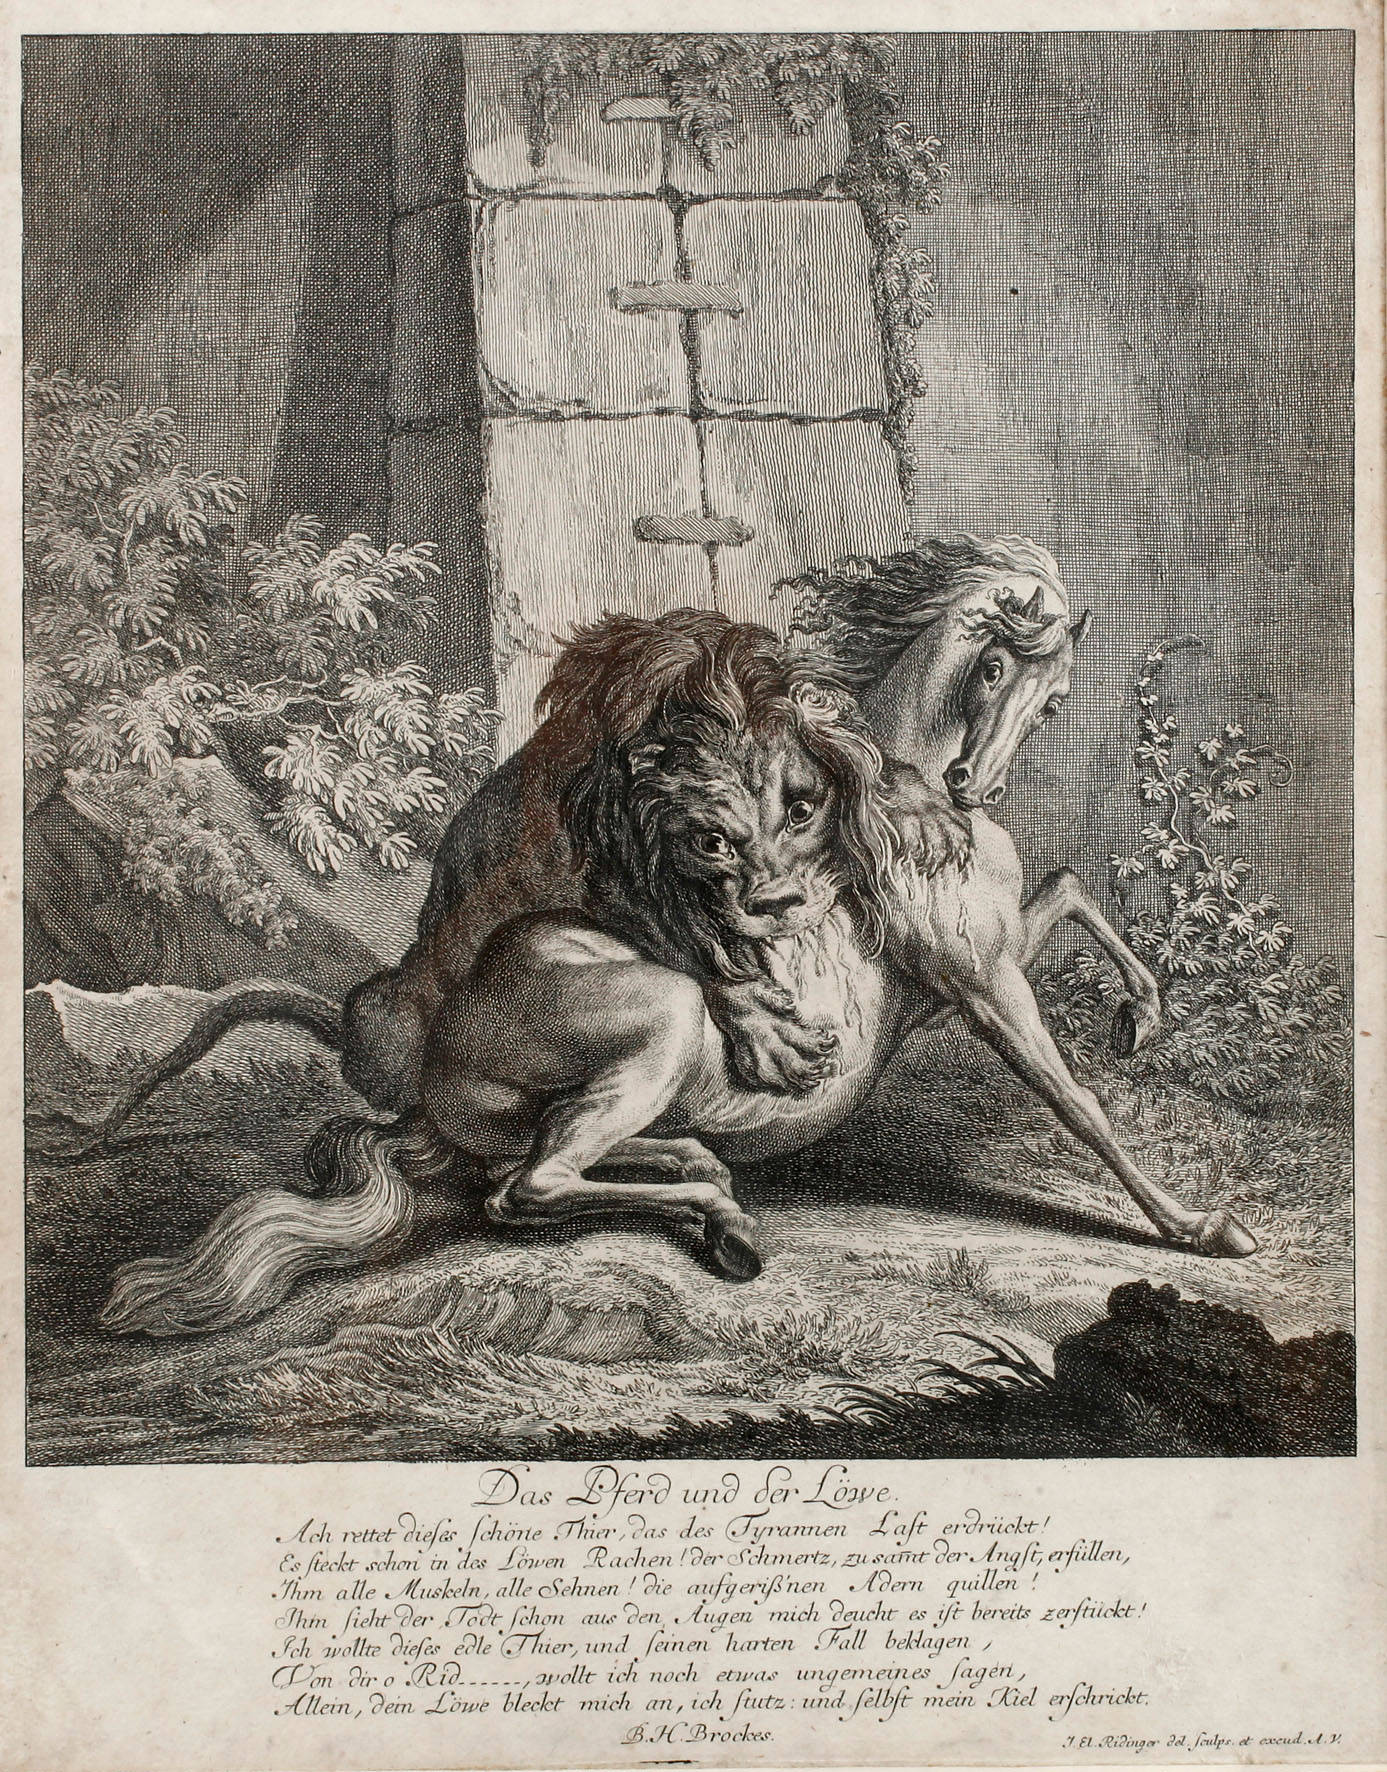 Johann Elias Ridinger, ”Das Pferd und der Löwe”